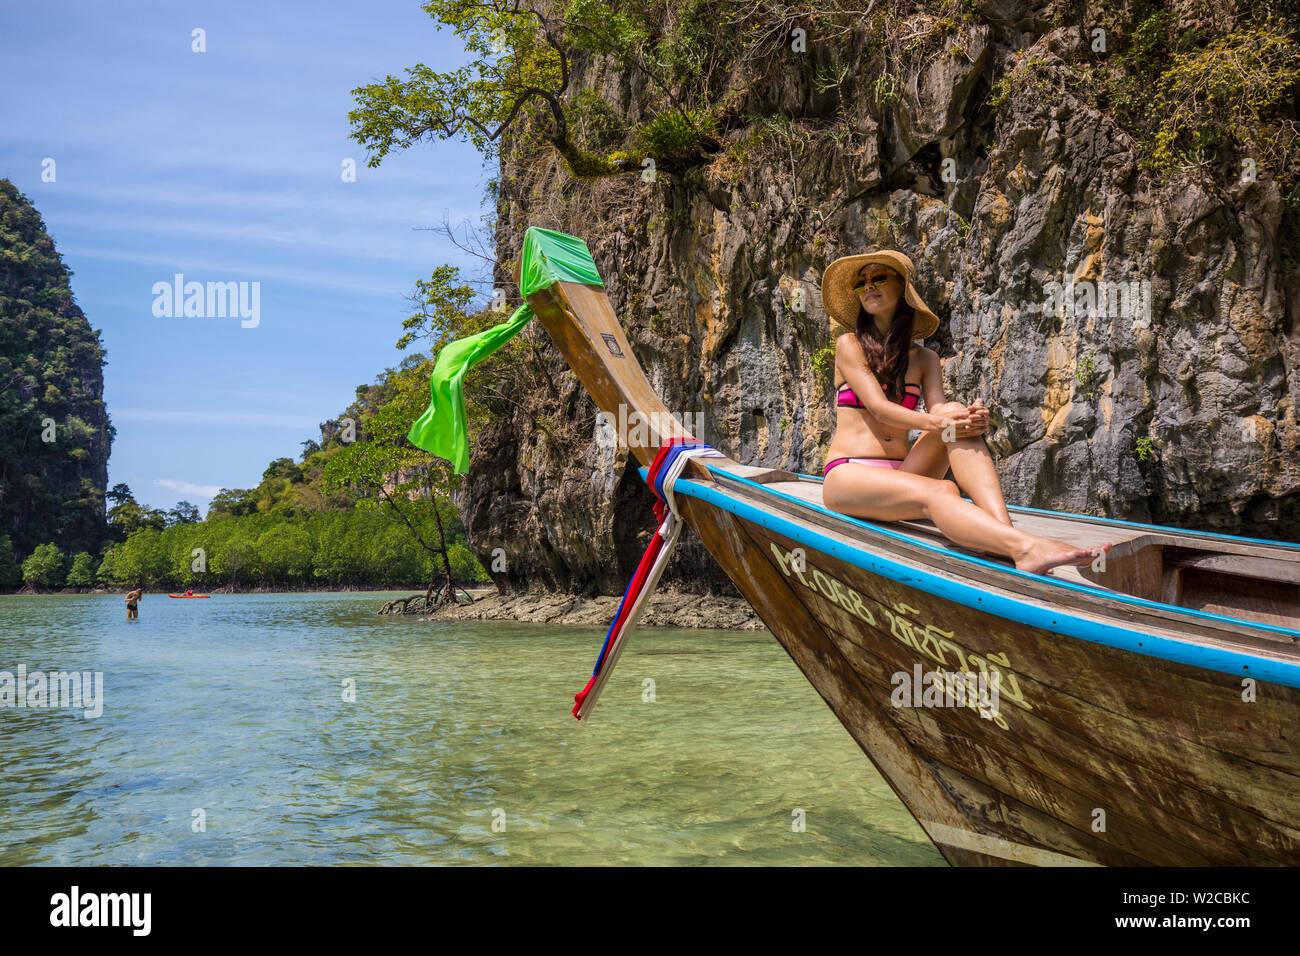 Ko Hong Island, Phang Nga Bay, Krabi Province, Thailand Stock Photo